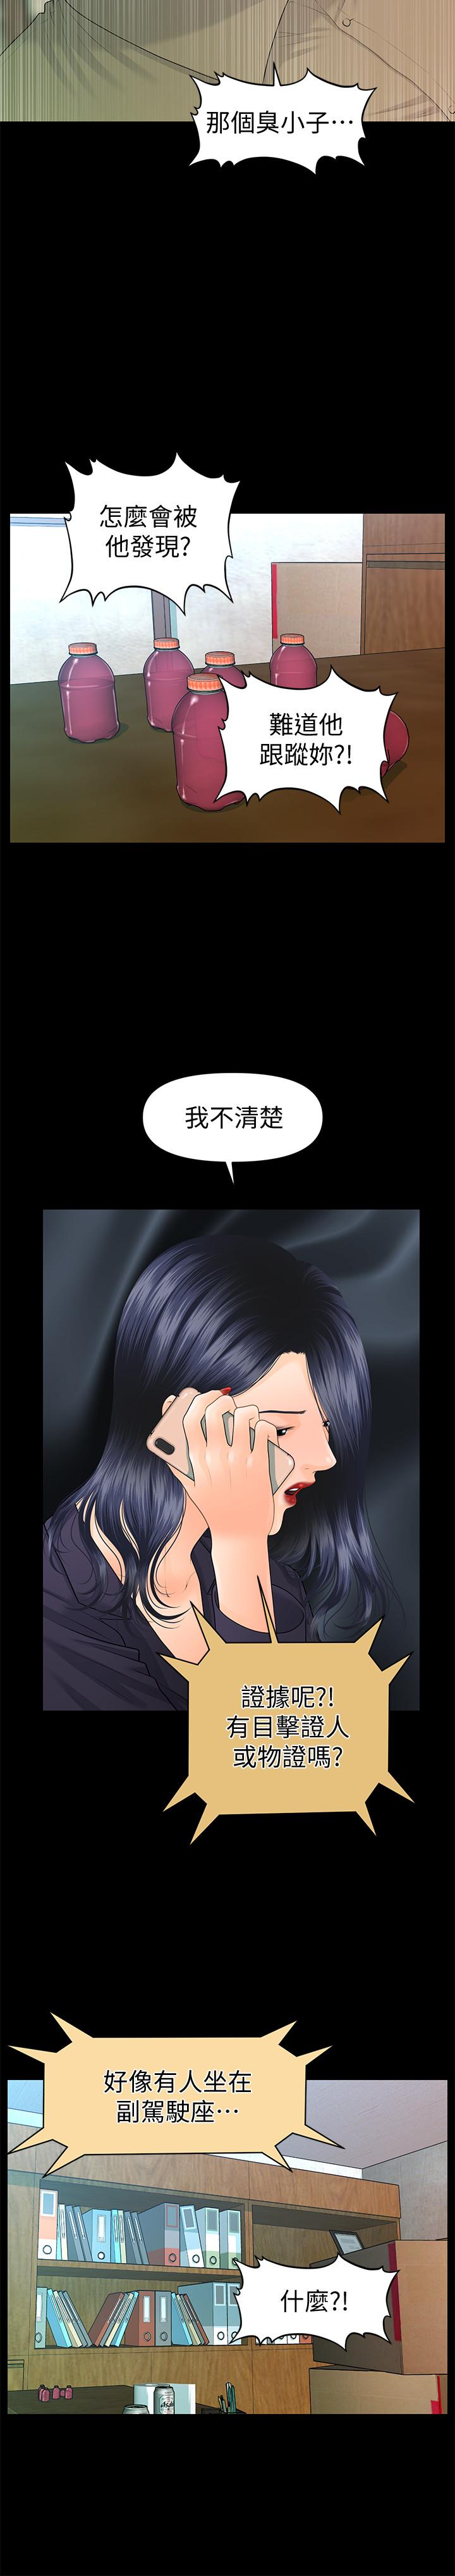 《秘书的潜规则》漫画 第83话-狠下杀手镧的朴胜哲